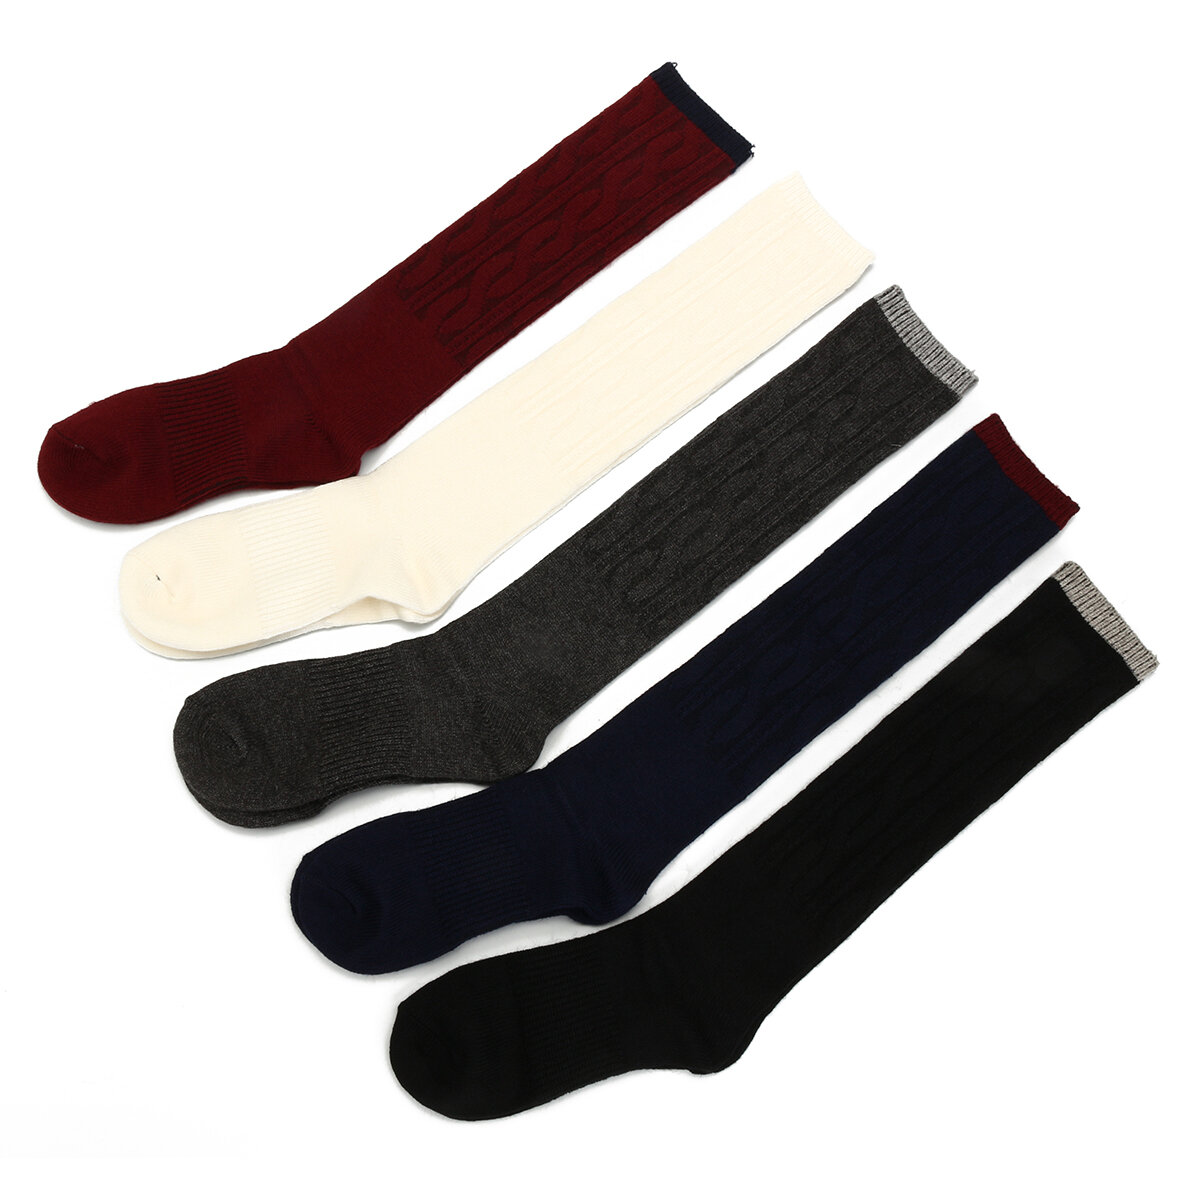 Damen Kniehohe Socken aus 100% Kaschmirwolle, warm, dick, weich und bequem für Winterstiefel